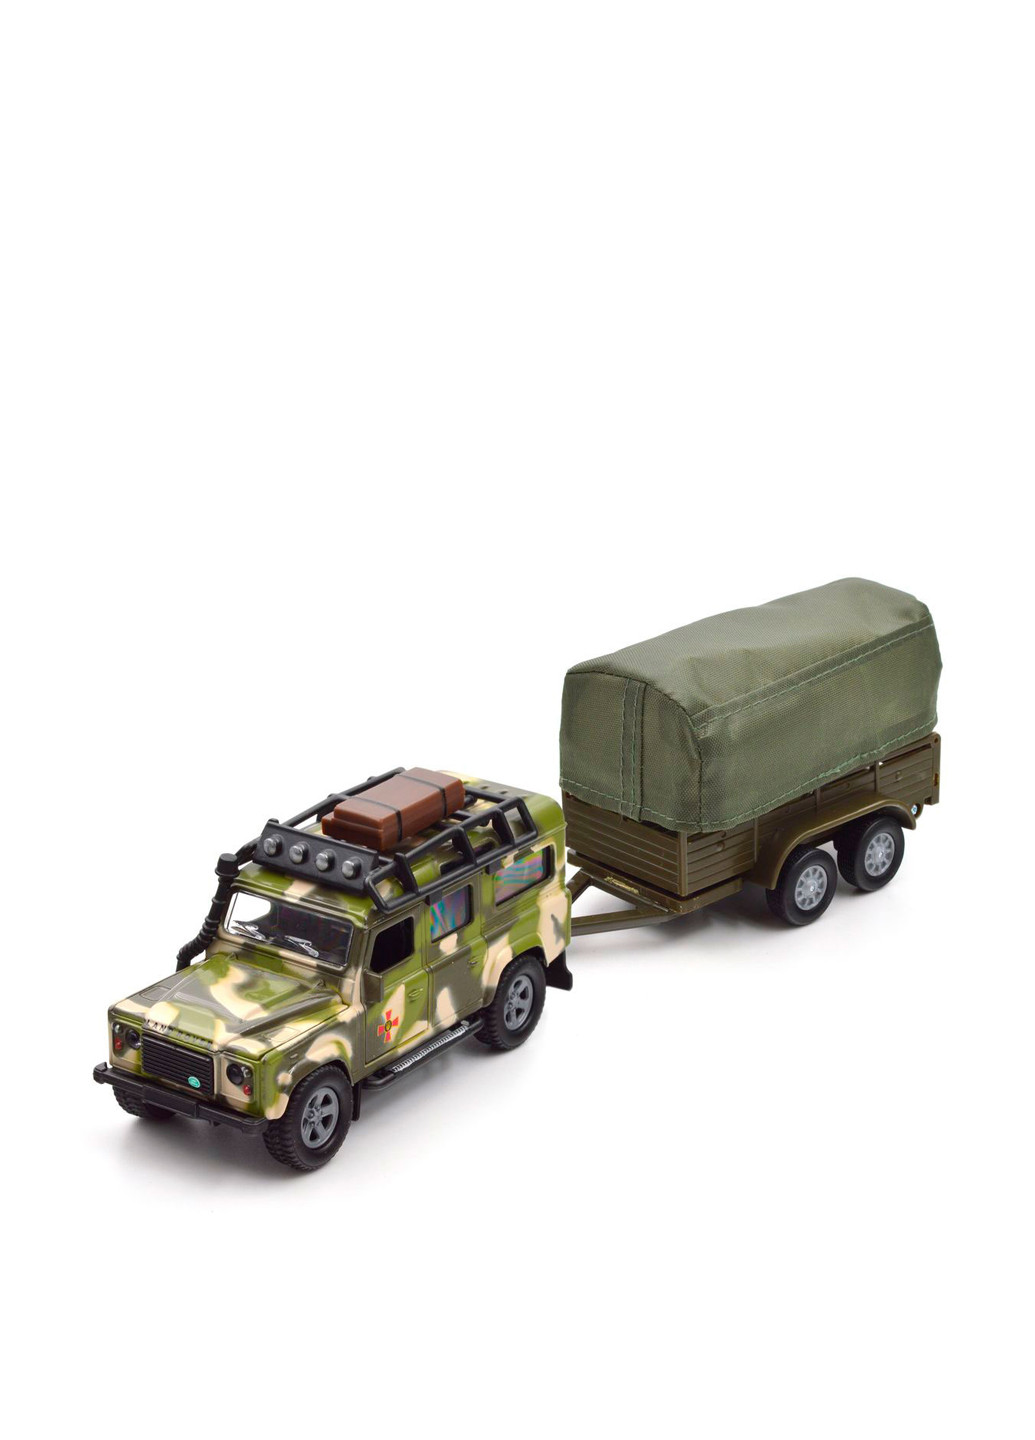 Ігровий набір Land Rover Defender Мілітарі, 30,5х7х10,5 см TechnoDrive (267897315)